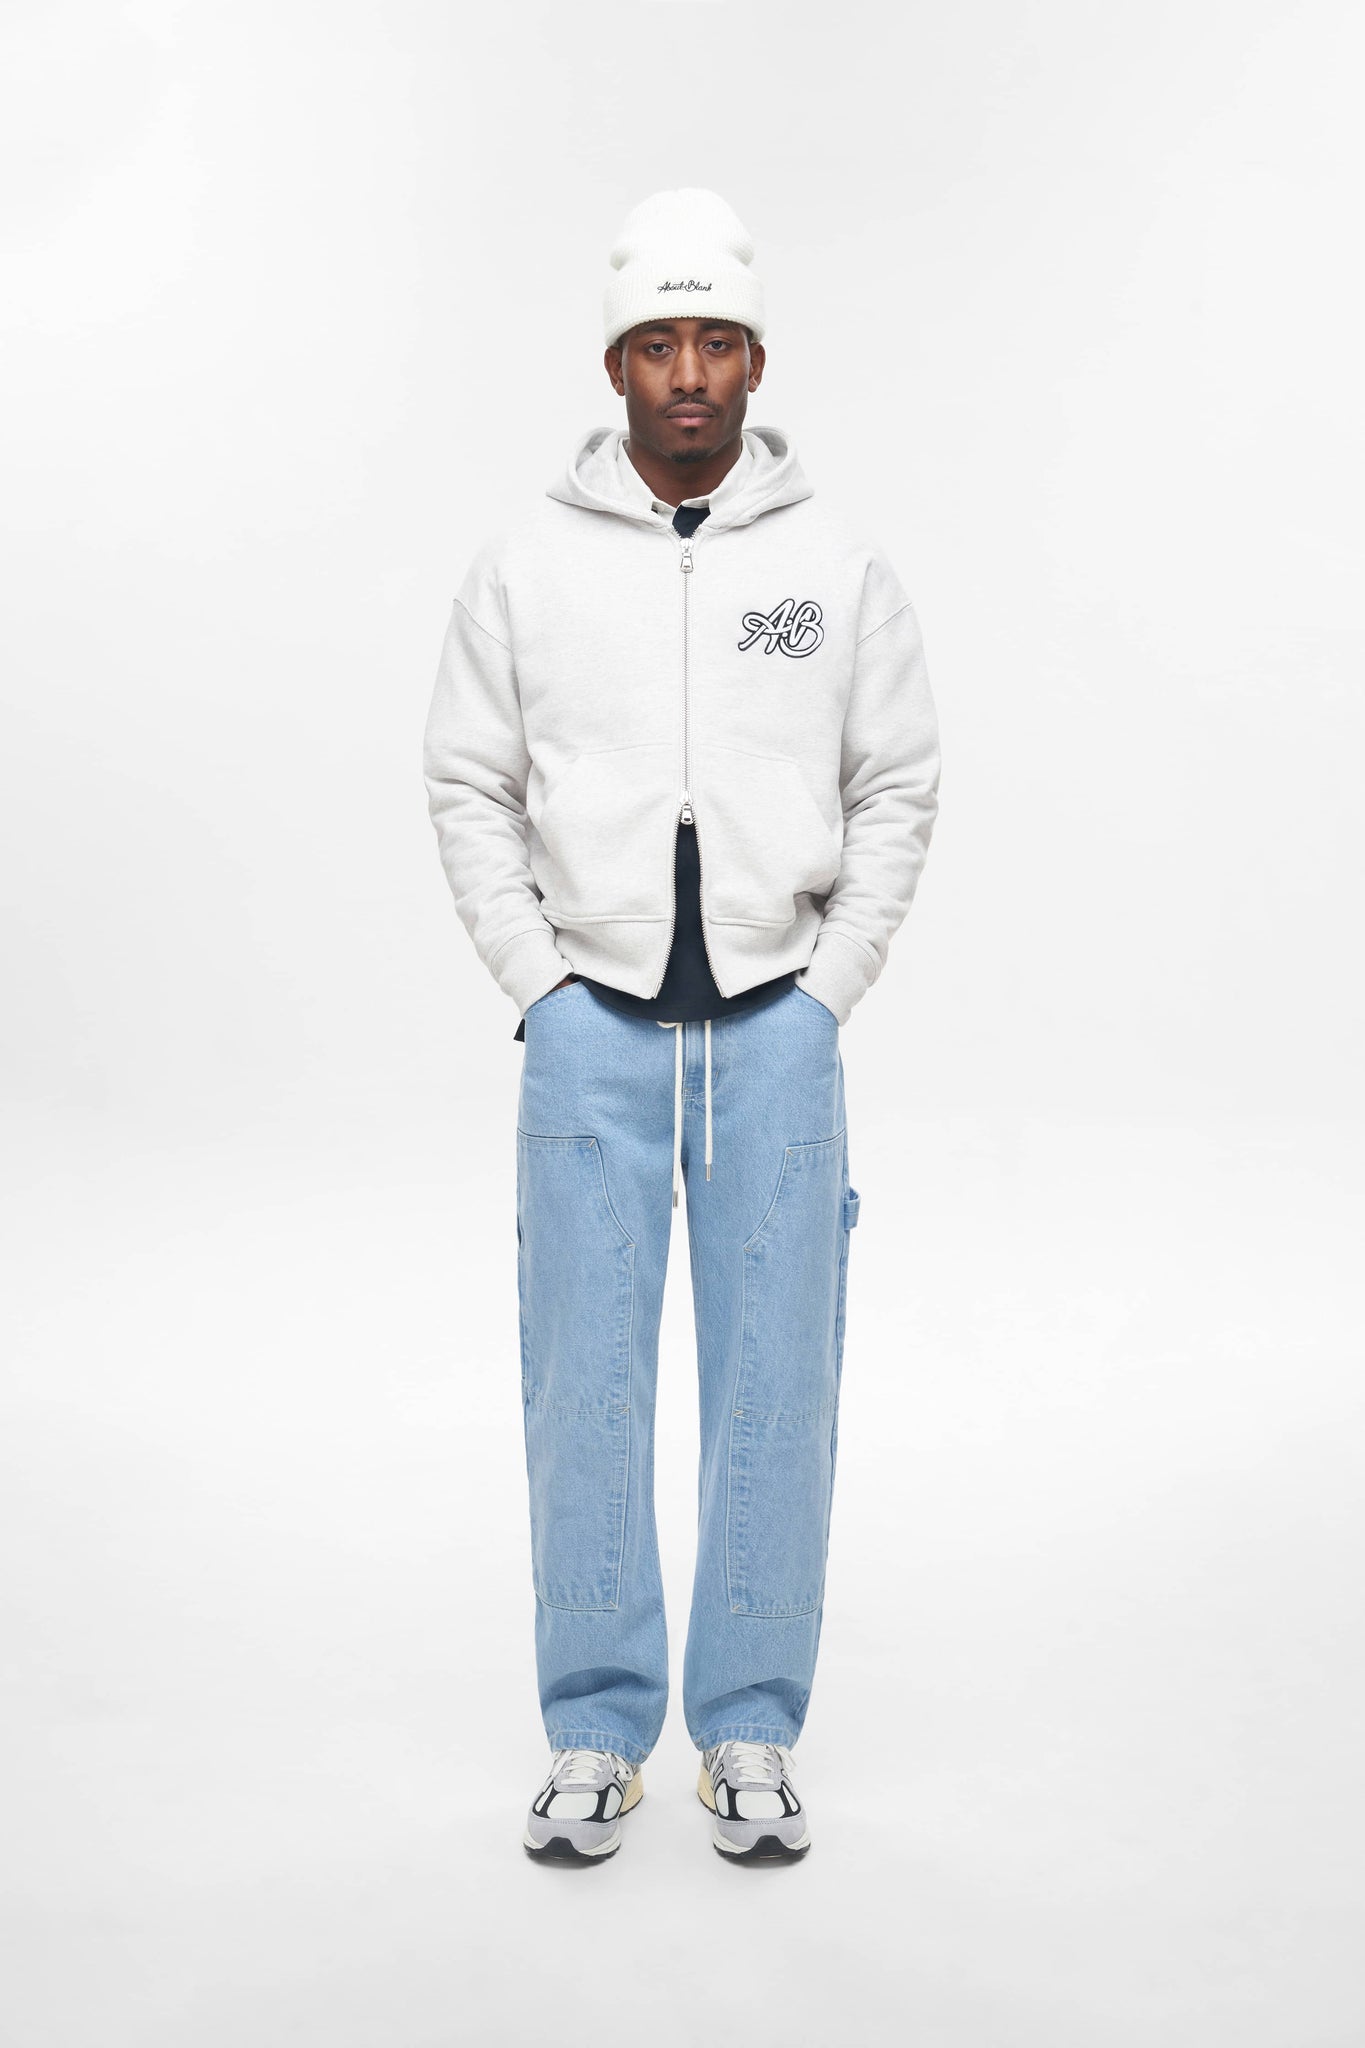 initial double zip hoodie grey marl/white